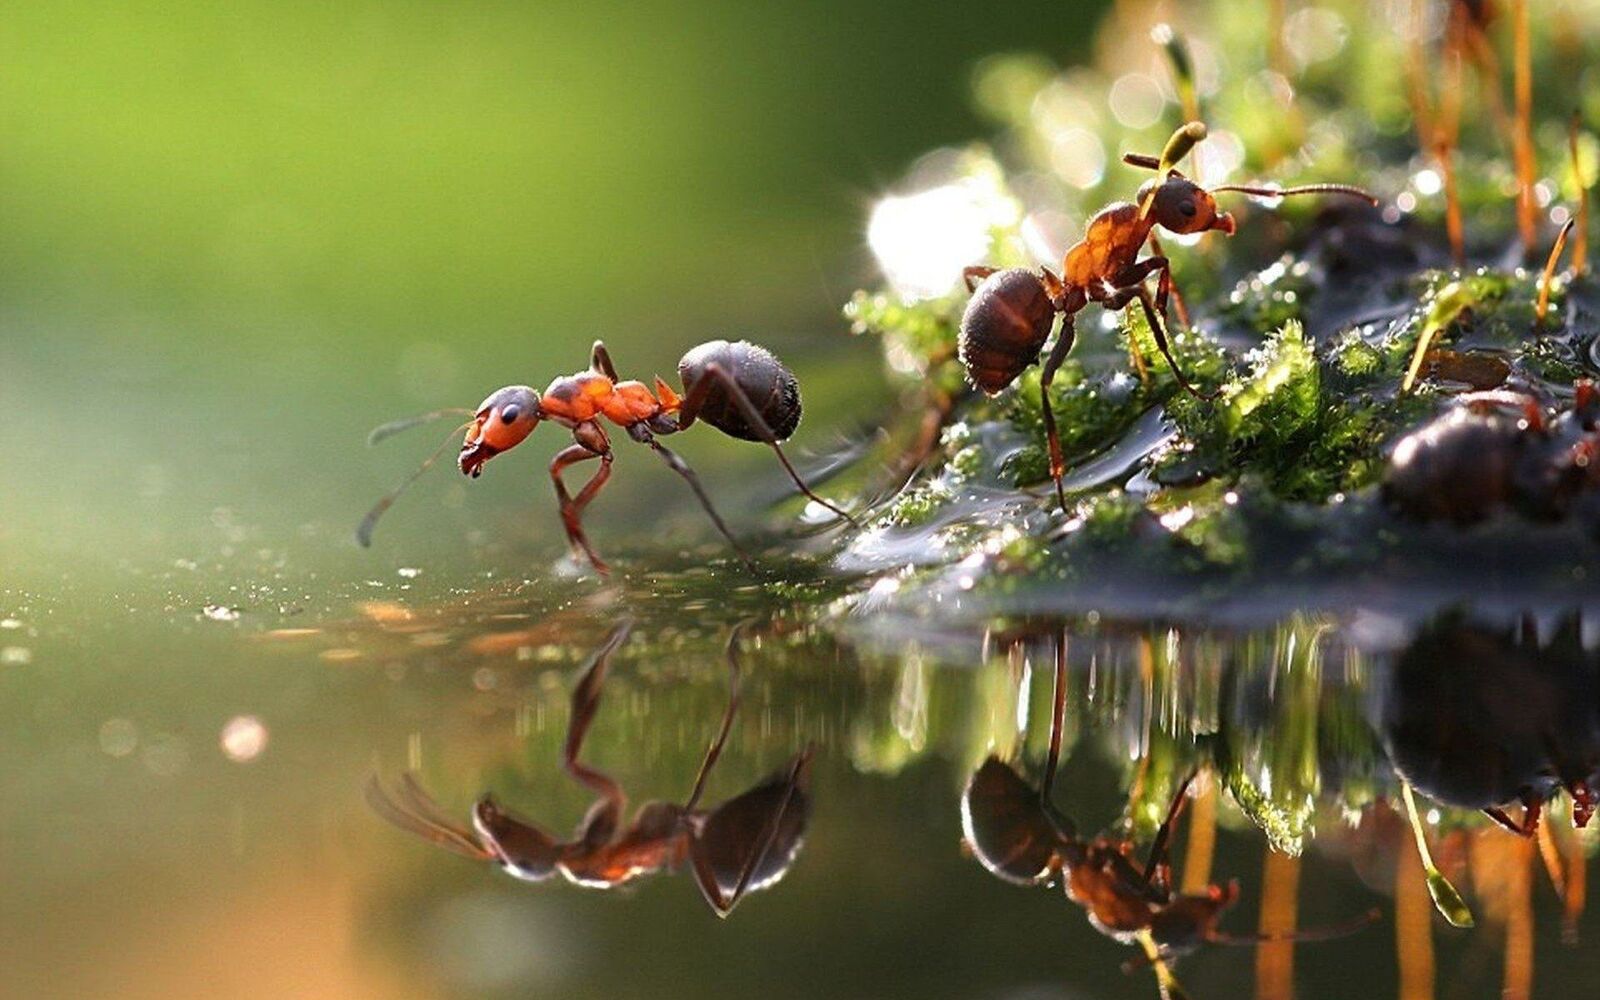 صورة نمل وانعكاسه في الماء